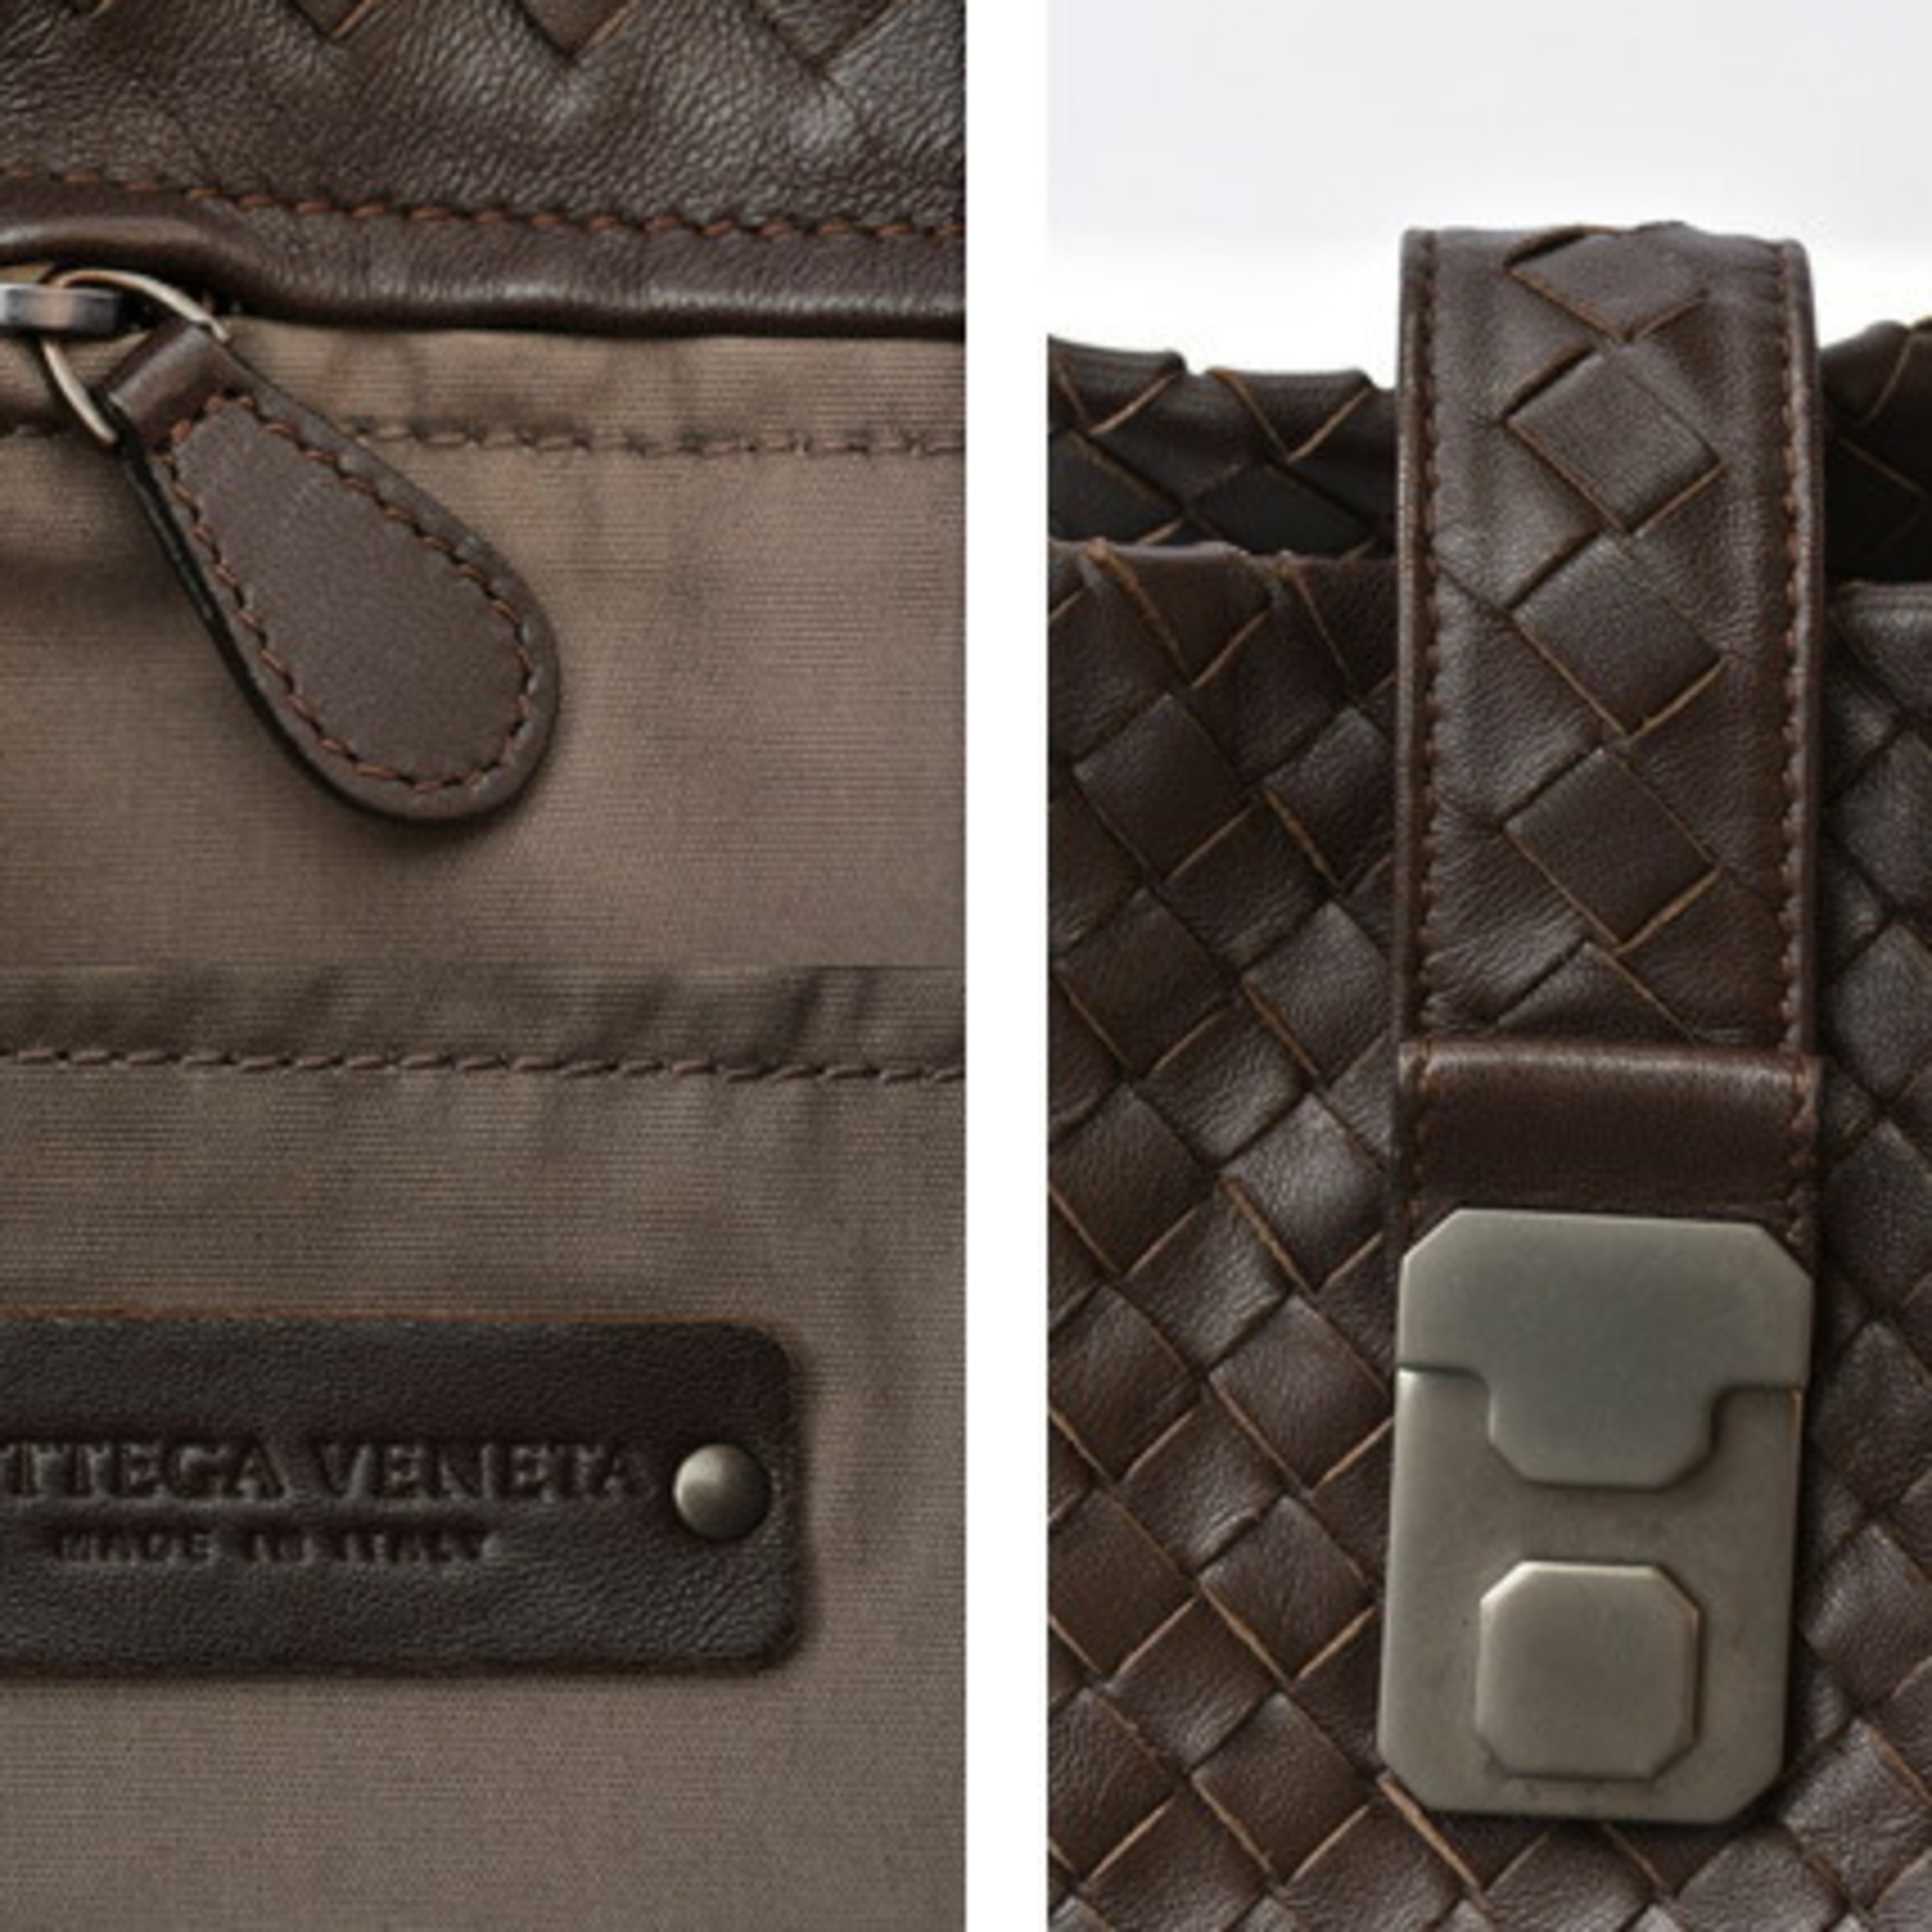 Bottega Veneta tote bag size BOTTEGA VENETA intrecciato leather dark brown